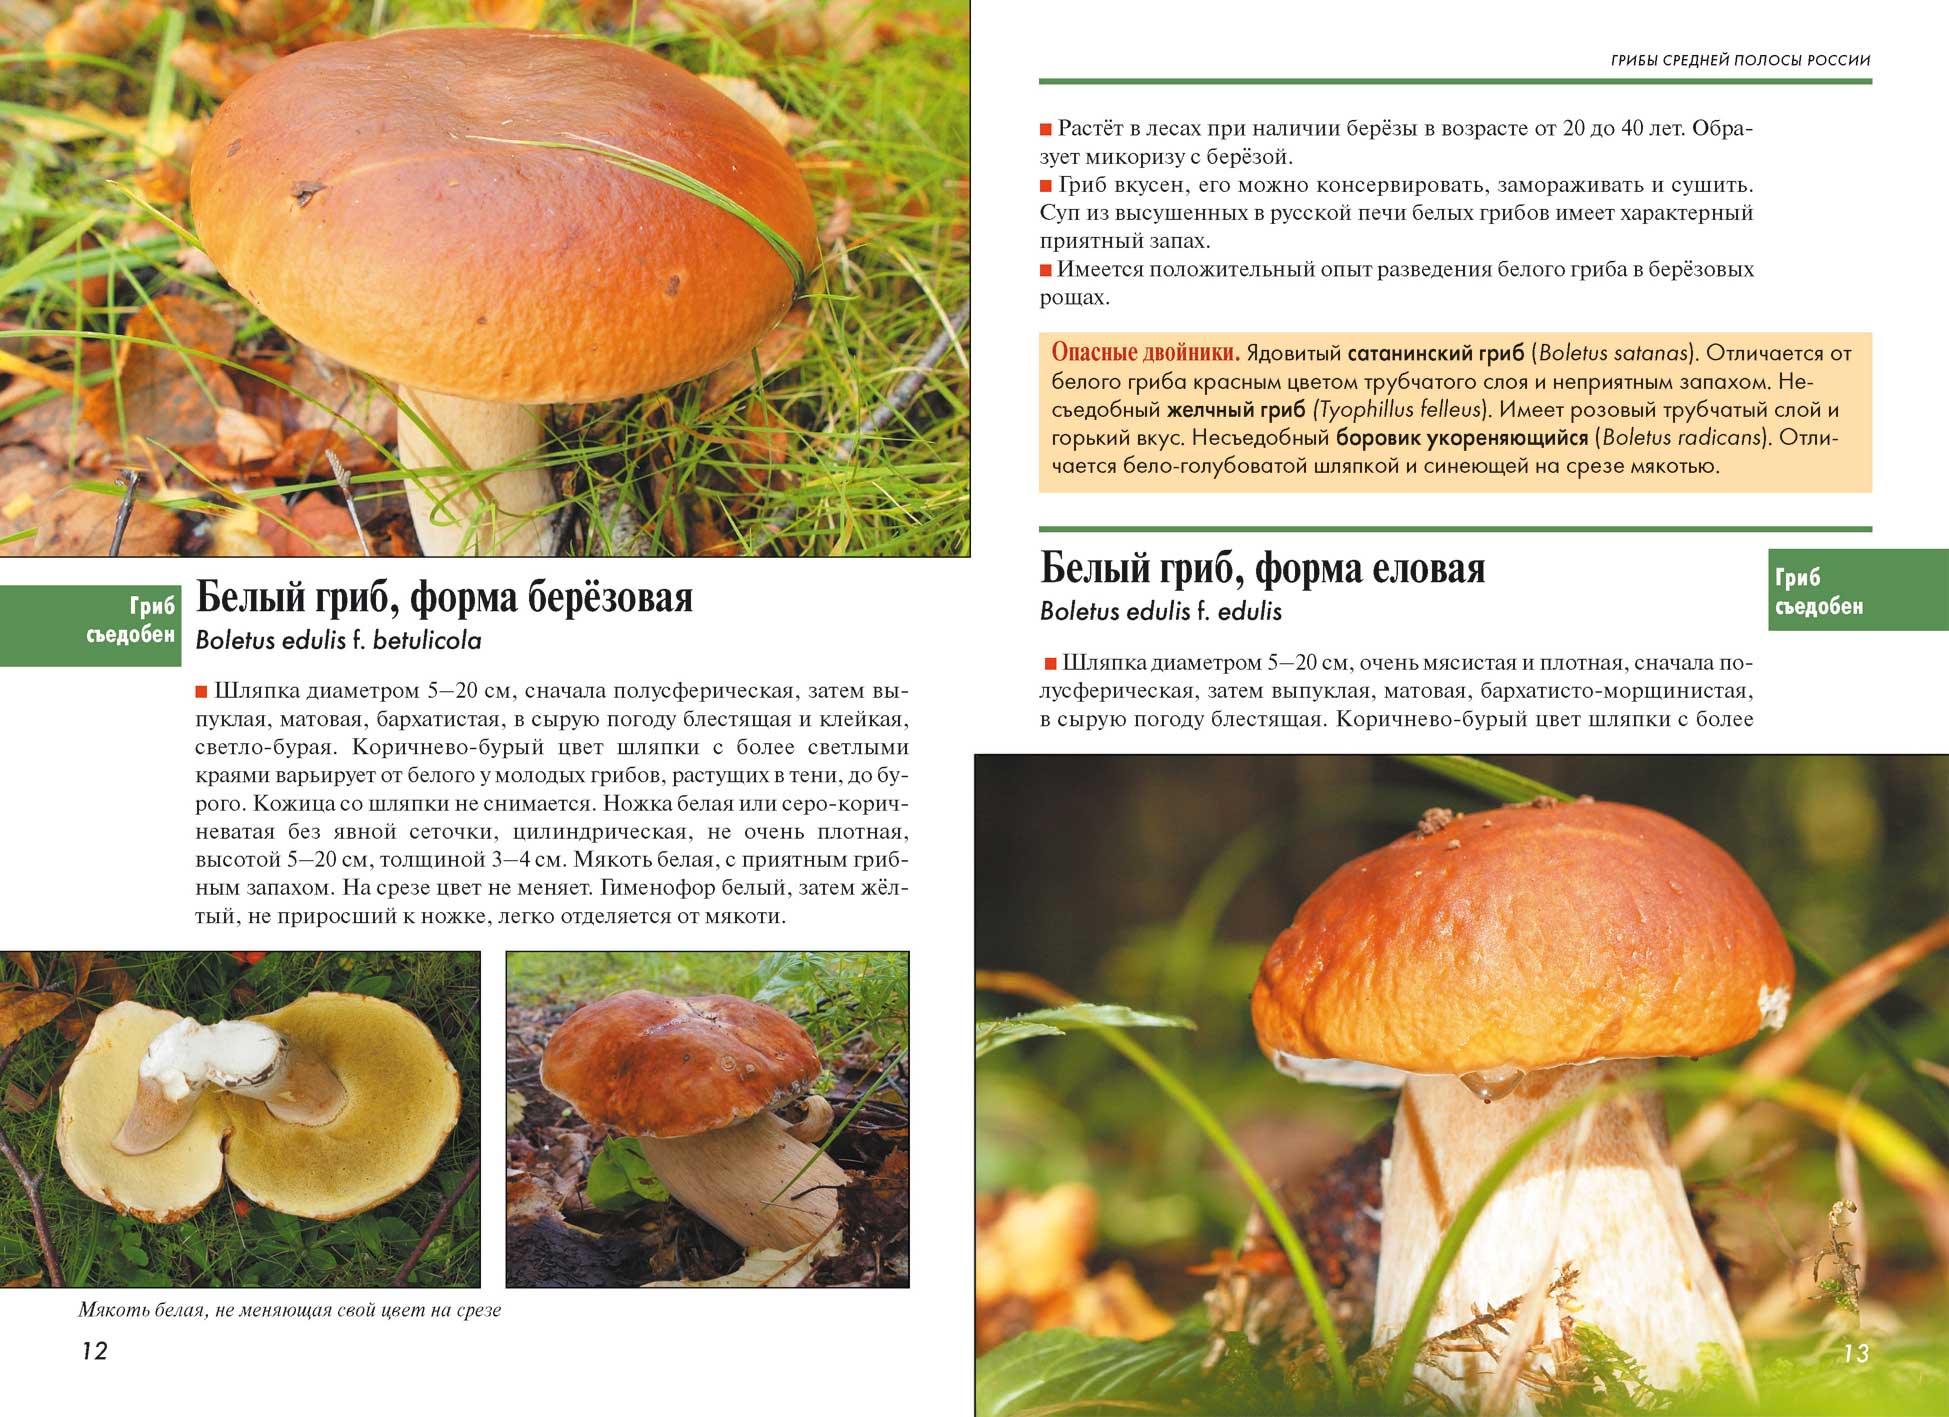 Какие полезные вещества содержатся в грибах? | еда и кулинария | школажизни.ру